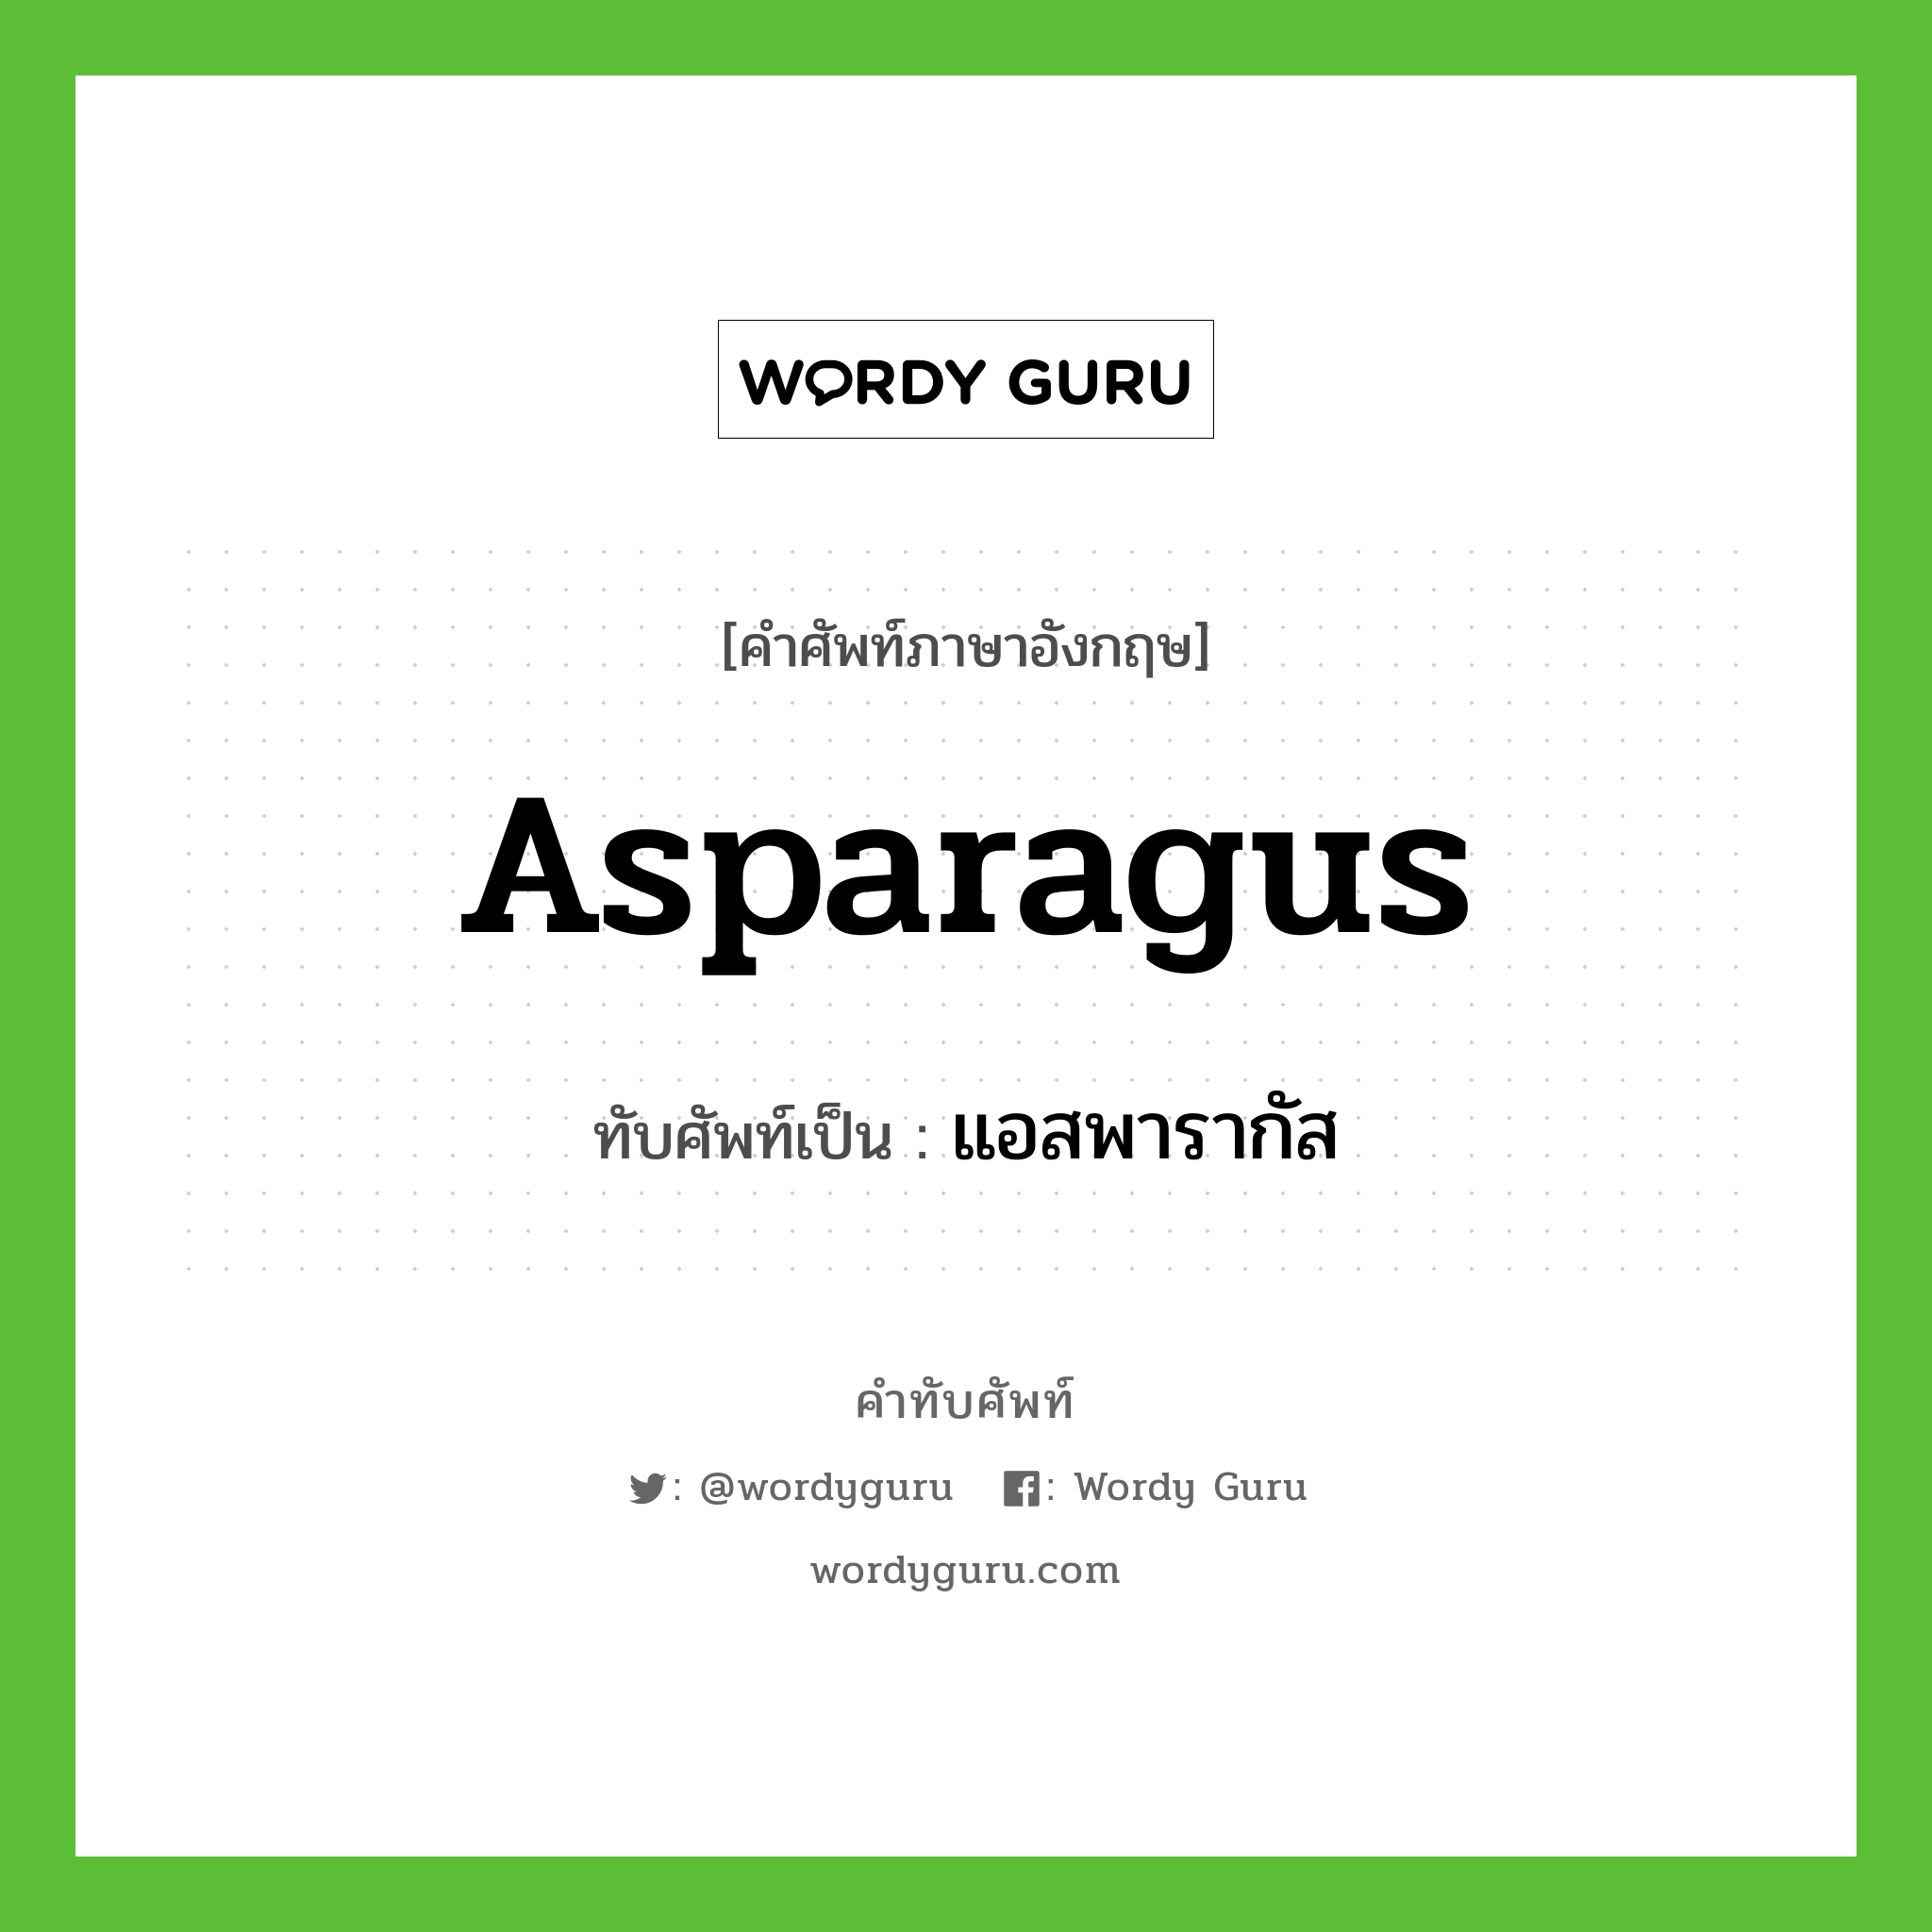 แอสพารากัส เขียนอย่างไร?, คำศัพท์ภาษาอังกฤษ แอสพารากัส ทับศัพท์เป็น asparagus